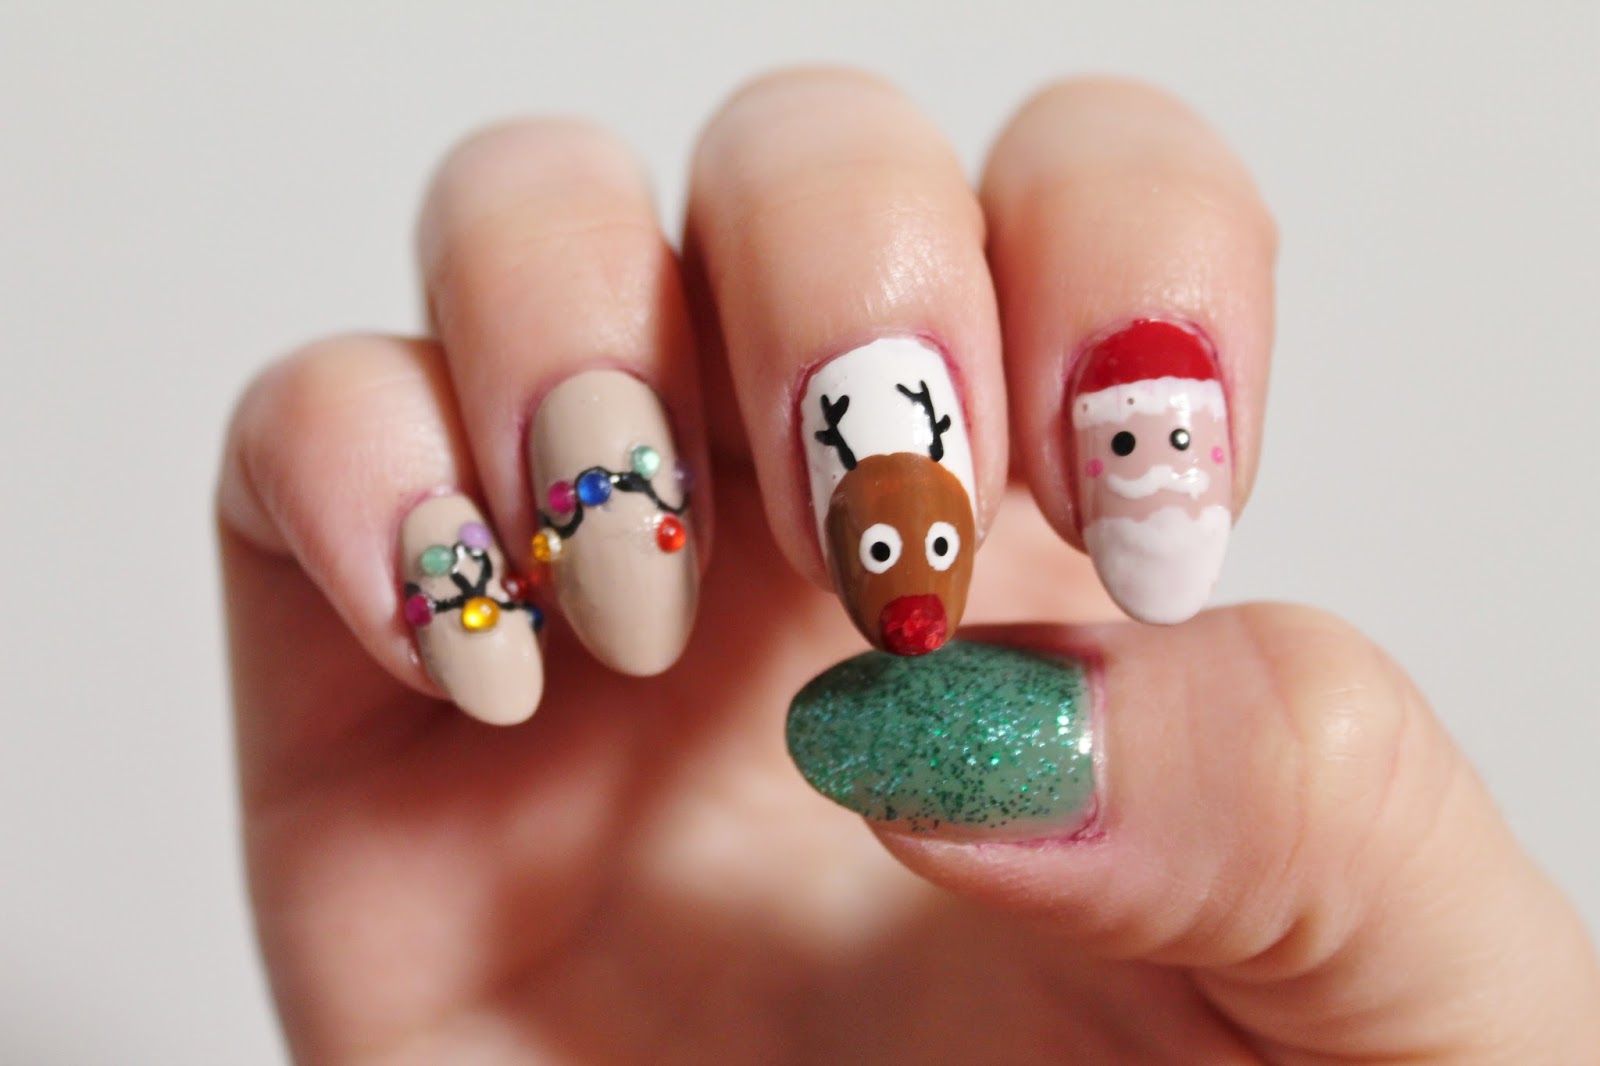 5. "Cute Reindeer Nail Art Designs on Pinterest" - wide 5